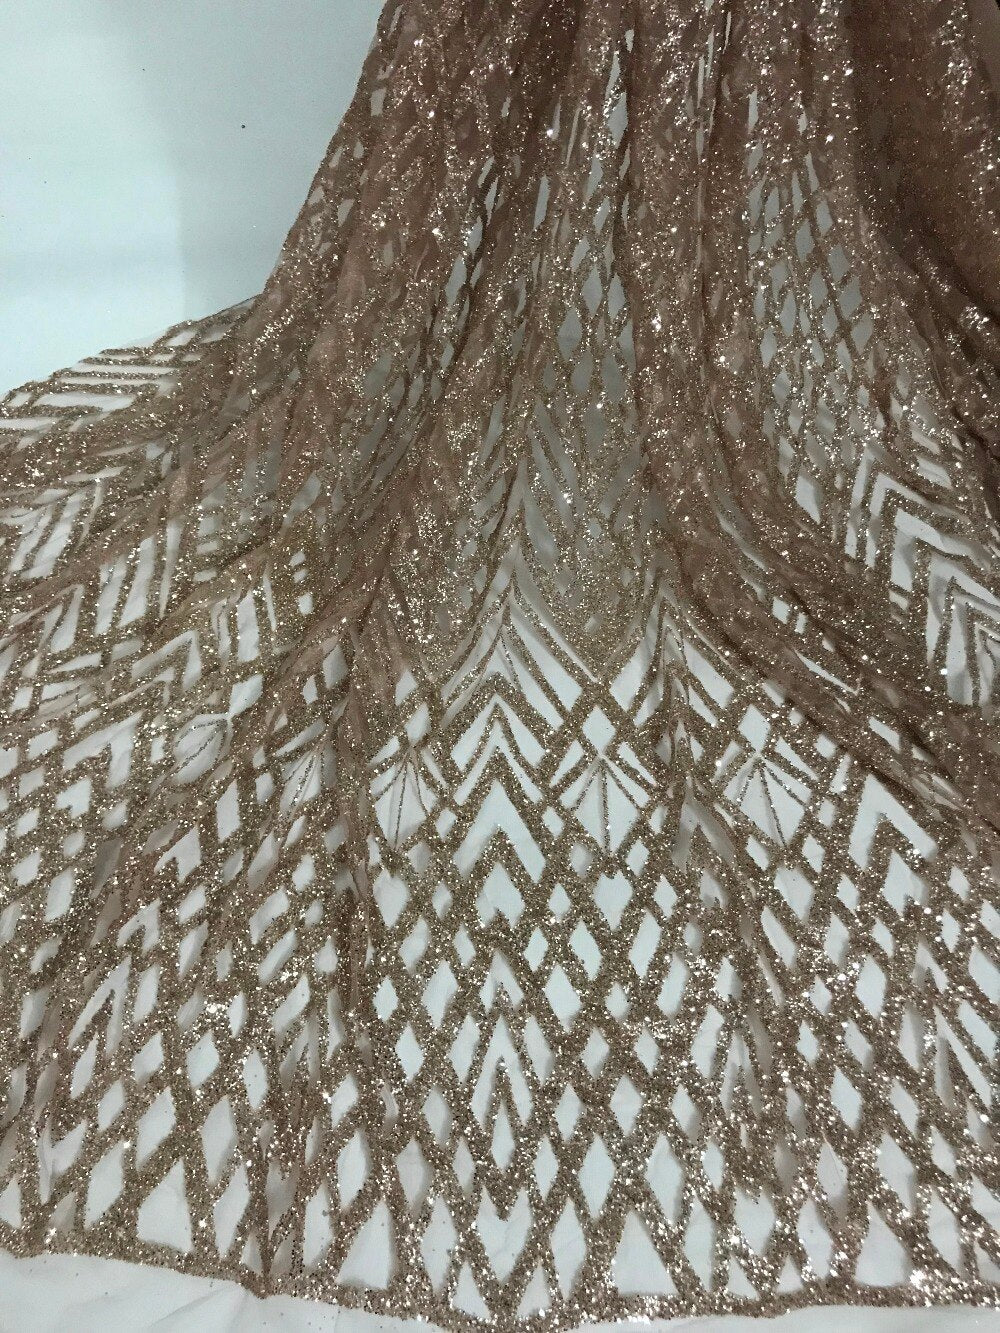 Tessuto per abiti da cerimonia nuziale in pizzo con ricami geometrici color oro marrone Nicolette, 5 metri